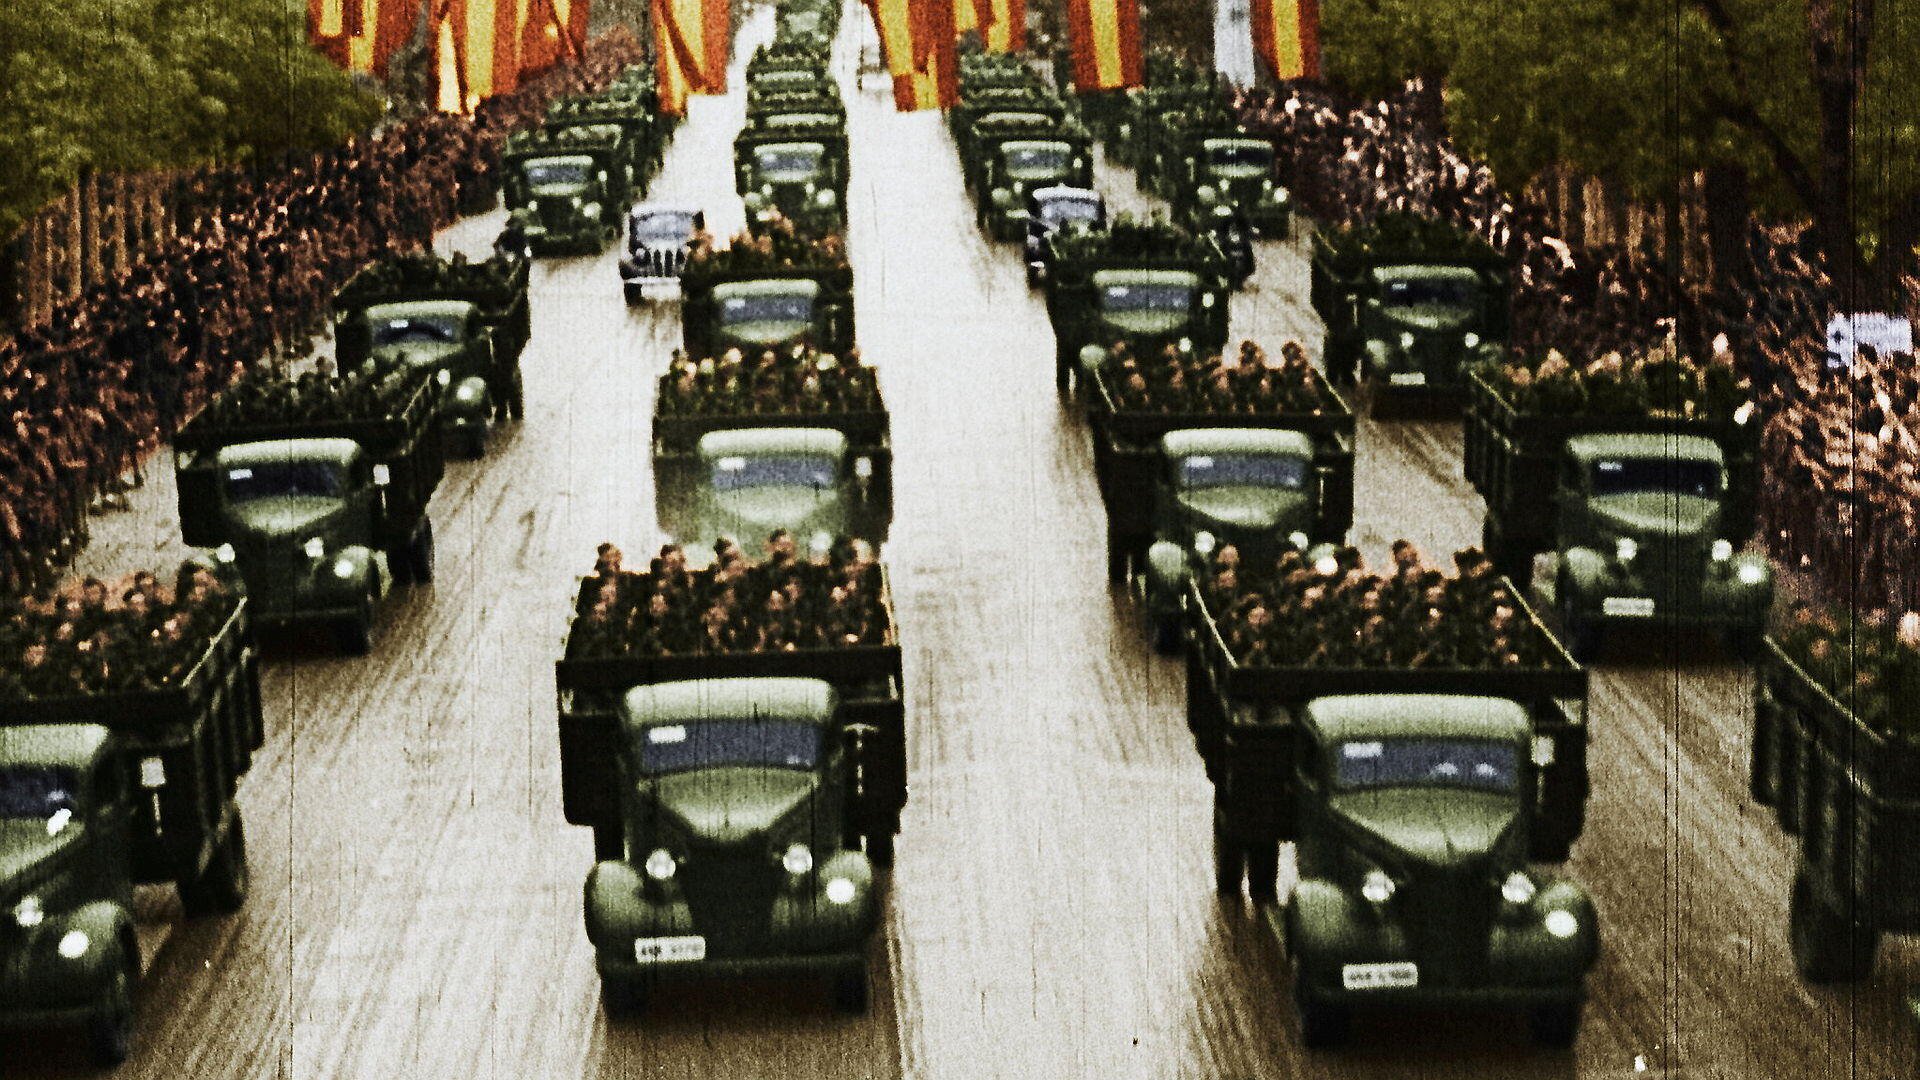 Der Spanische Bürgerkrieg in Farbe